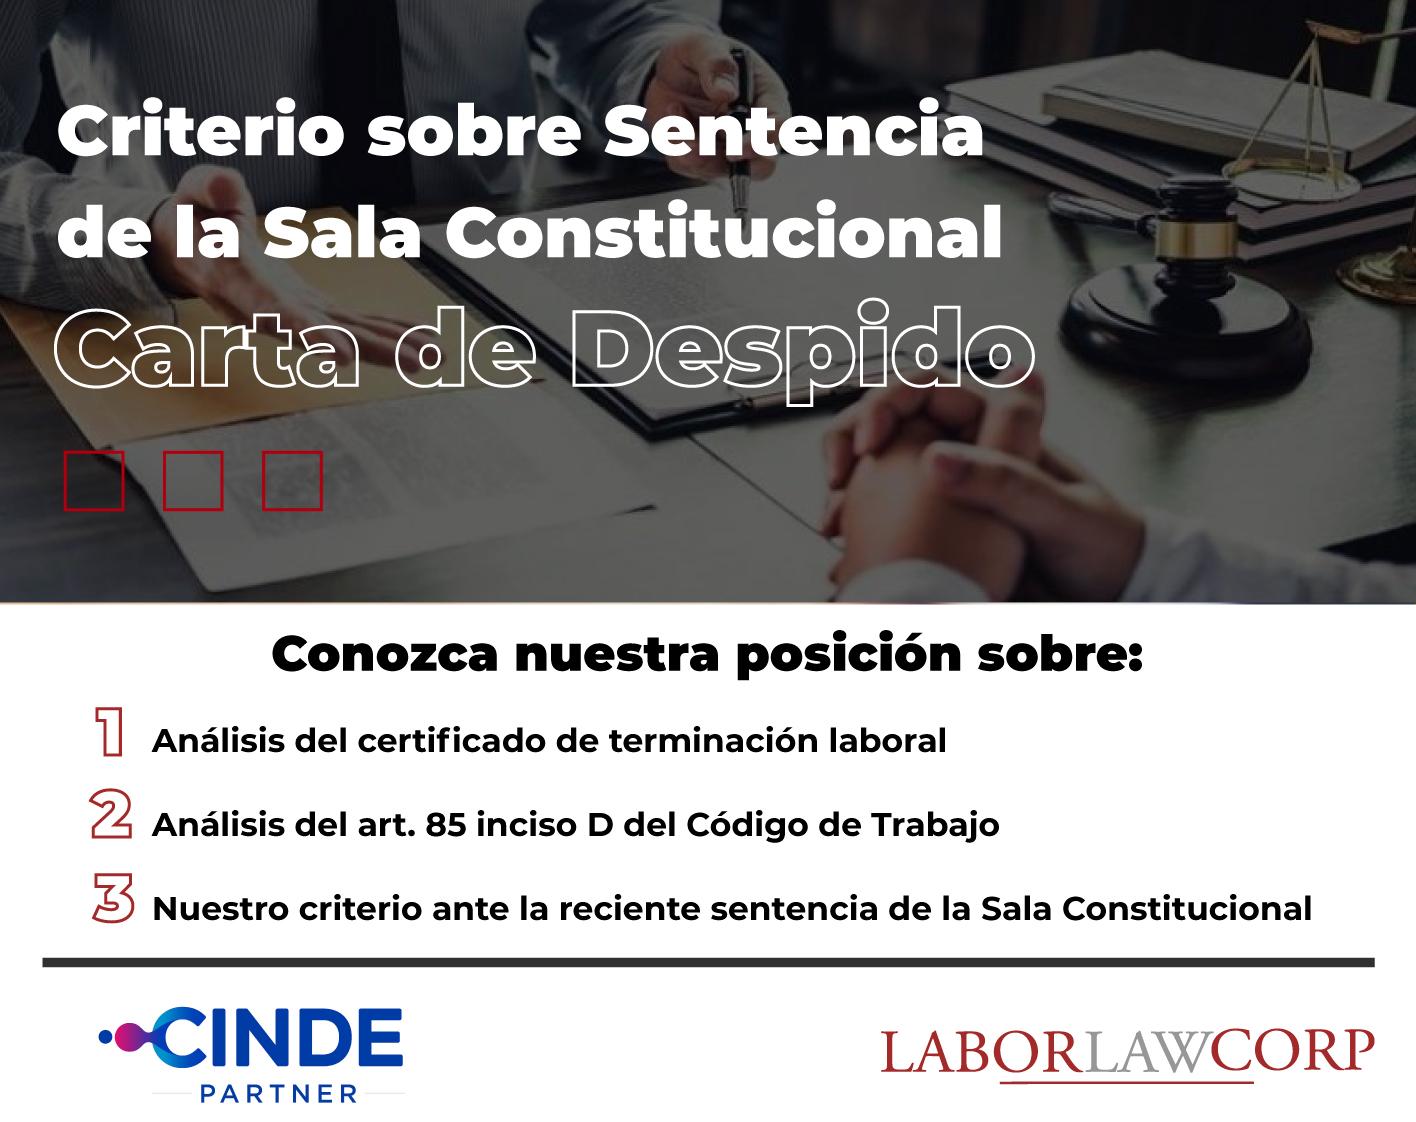 Labor Law Corp - Abogados especialistas en derecho laboral corporativo.  Centroamérica.